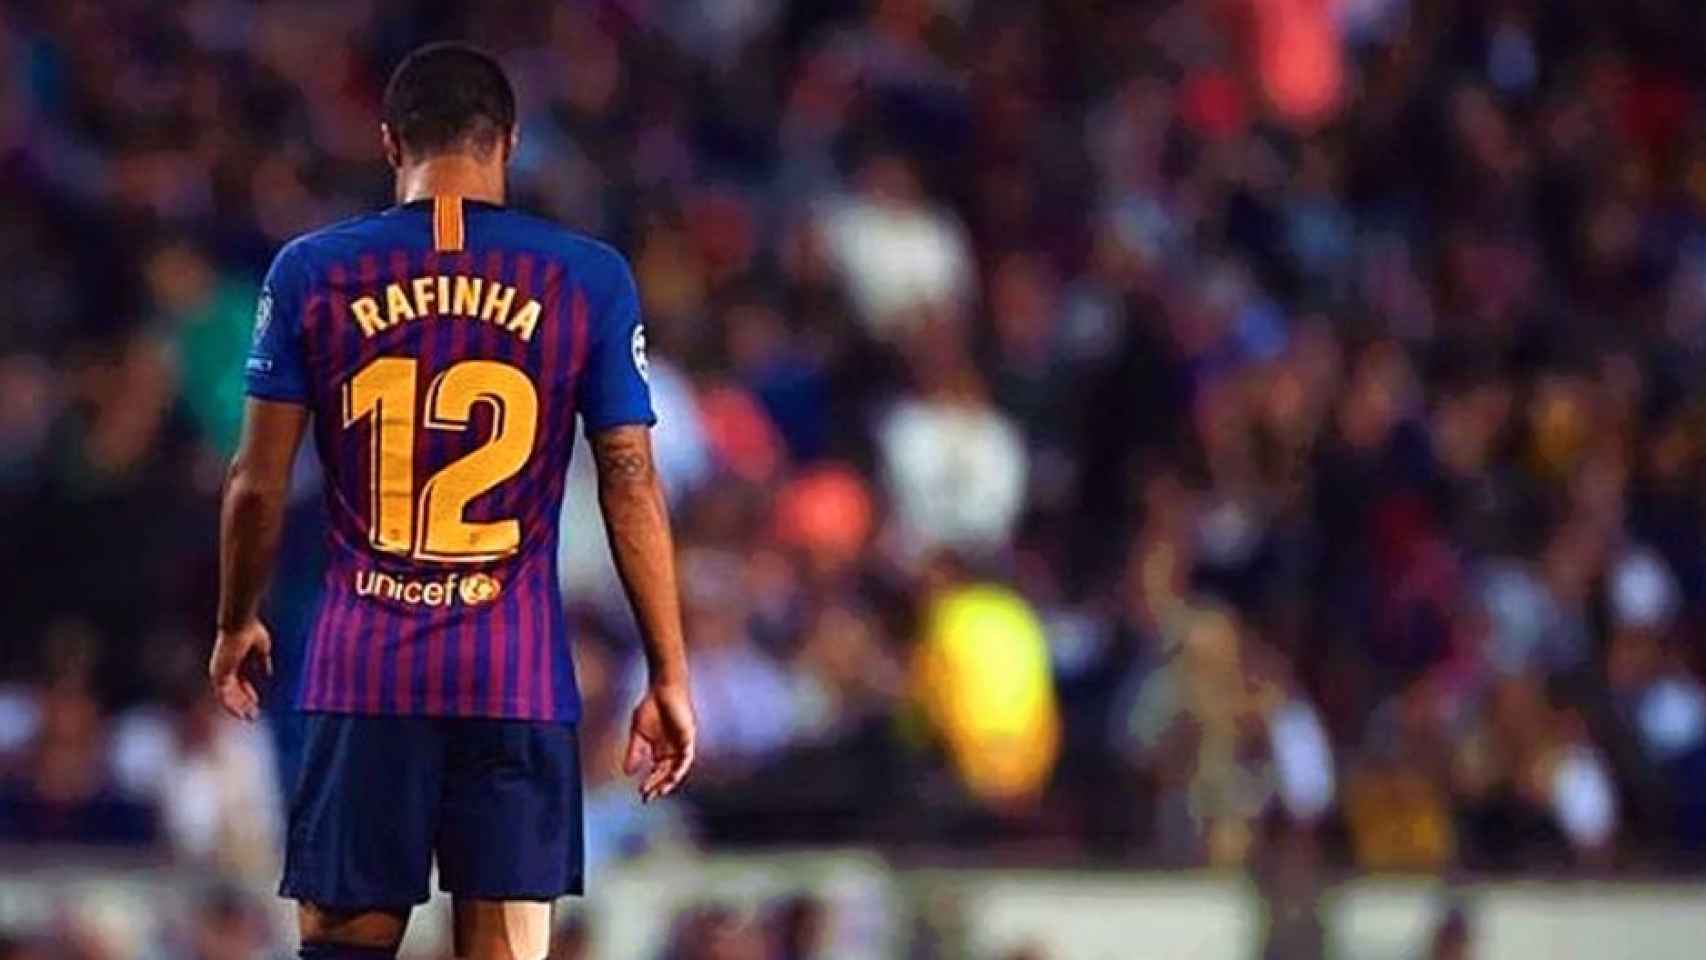 Rafinha, cabizbajo con la camiseta del Barça / INSTAGRAM